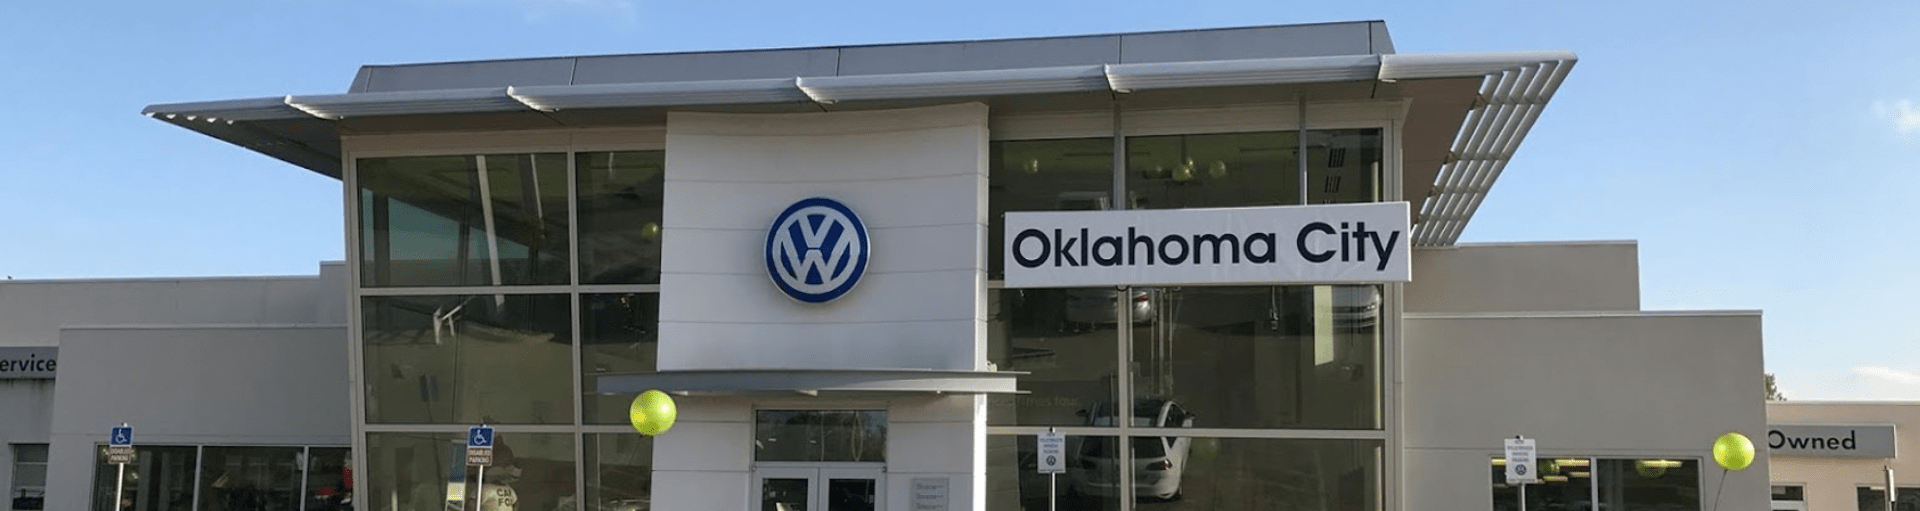 Oklahoma City Volkswagen Tire Rotation Service